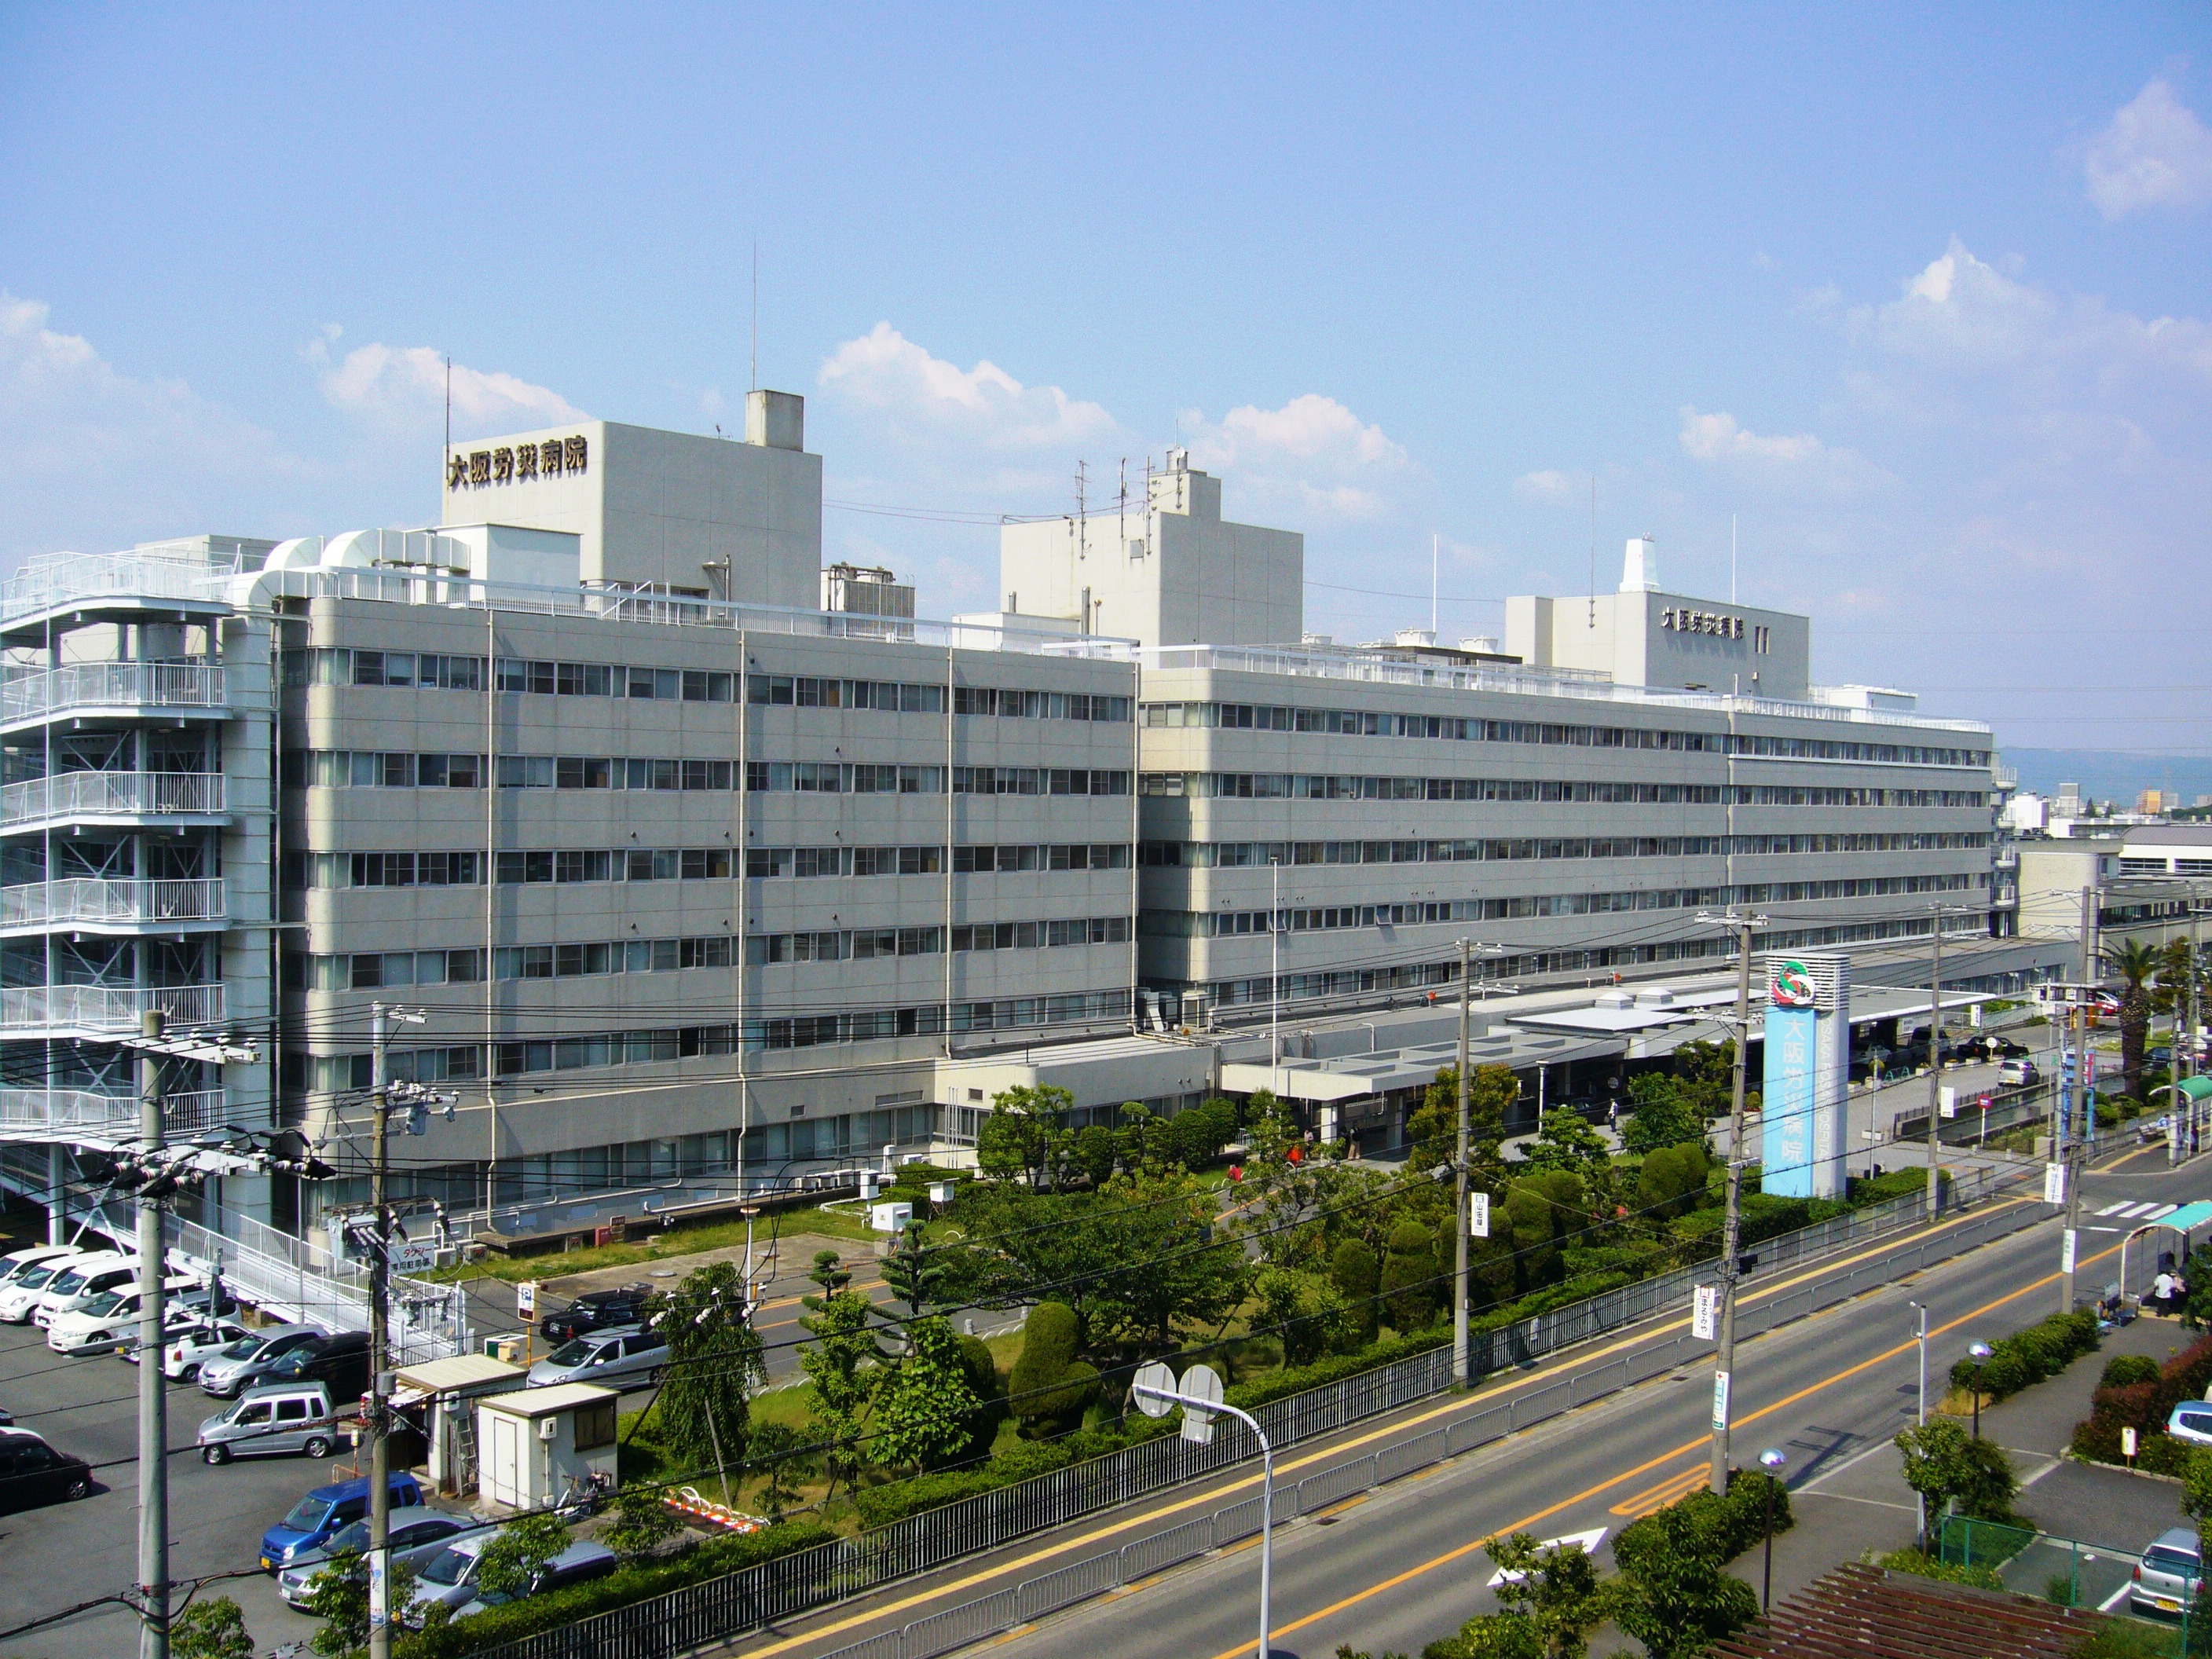 独立行政法人 労働者健康安全機構 大阪労災病院